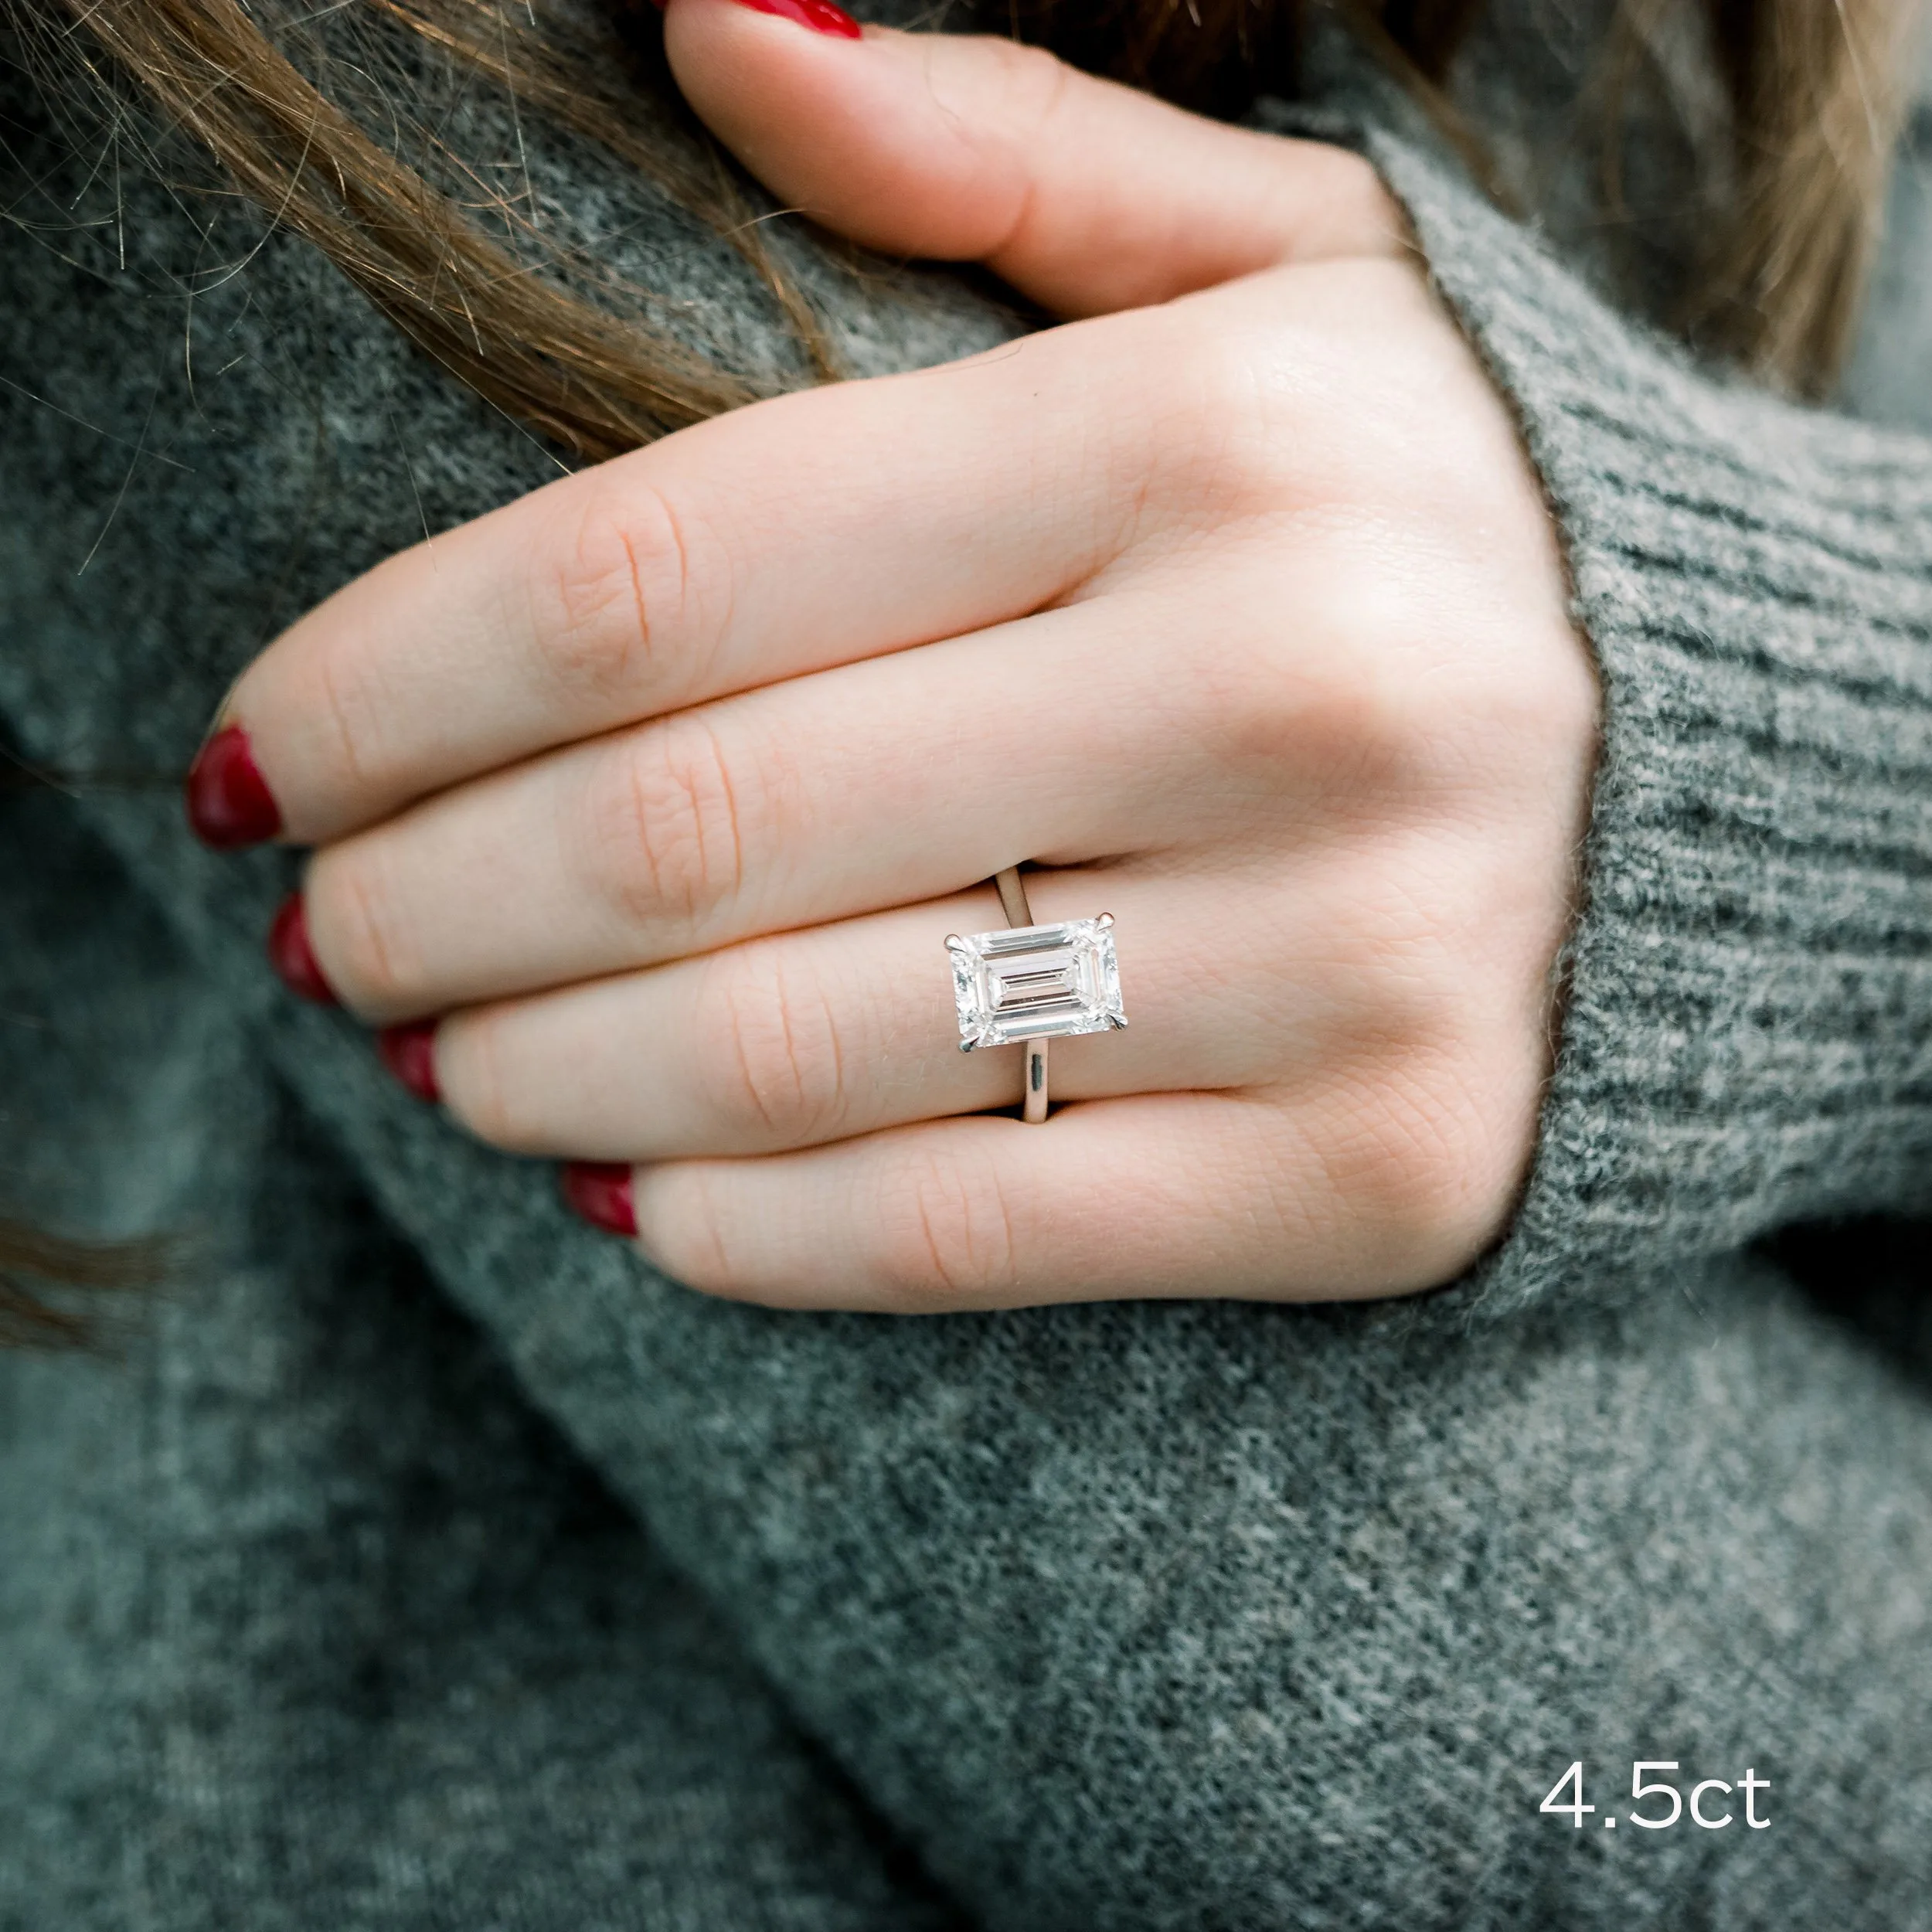 platinum 4.5ct emerald cut lab diamond in high profile trellis solitaire engagement ring setting ada diamonds design ad 330